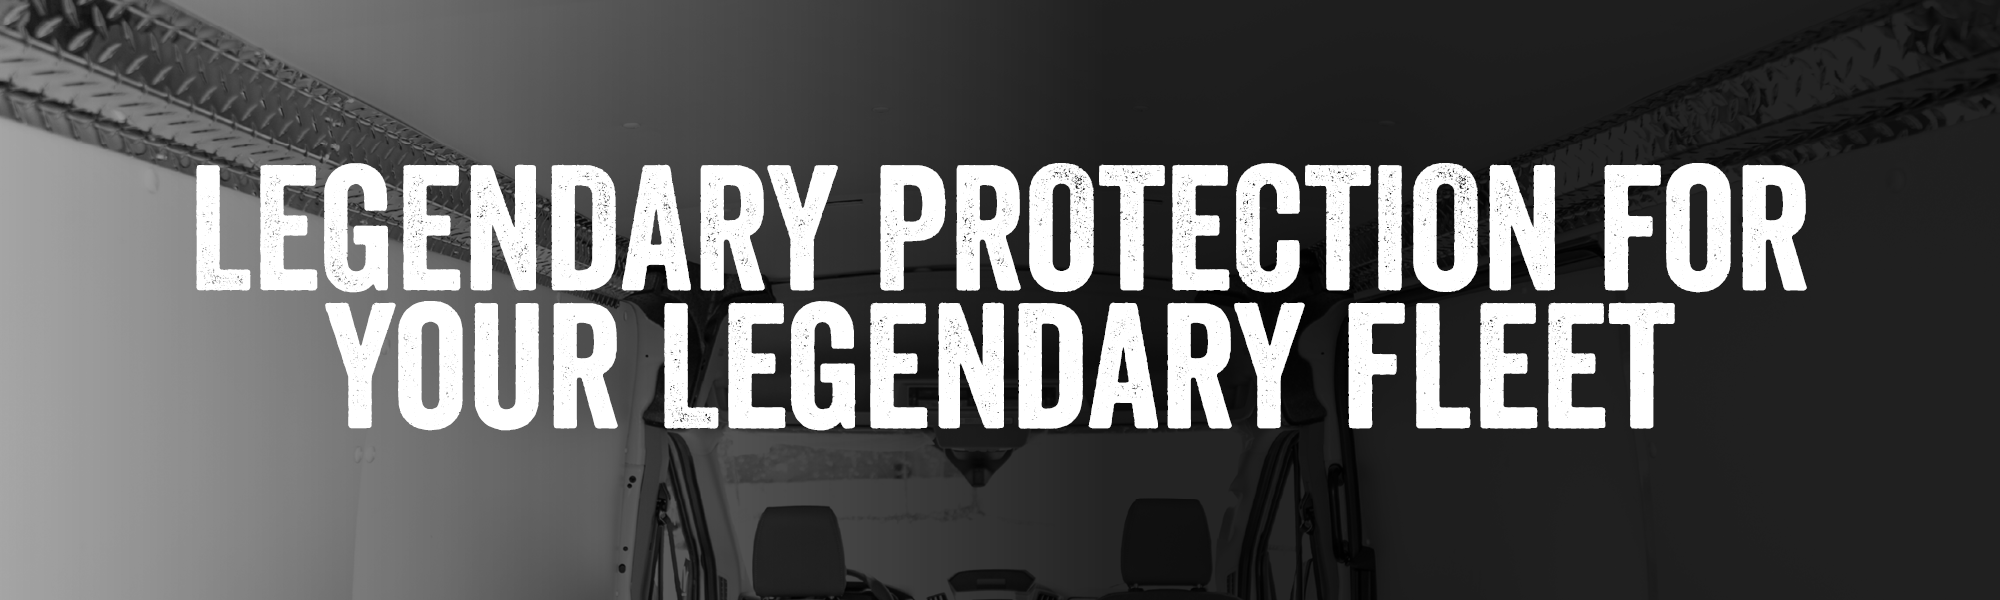 legendary protection for legendary fleet-1